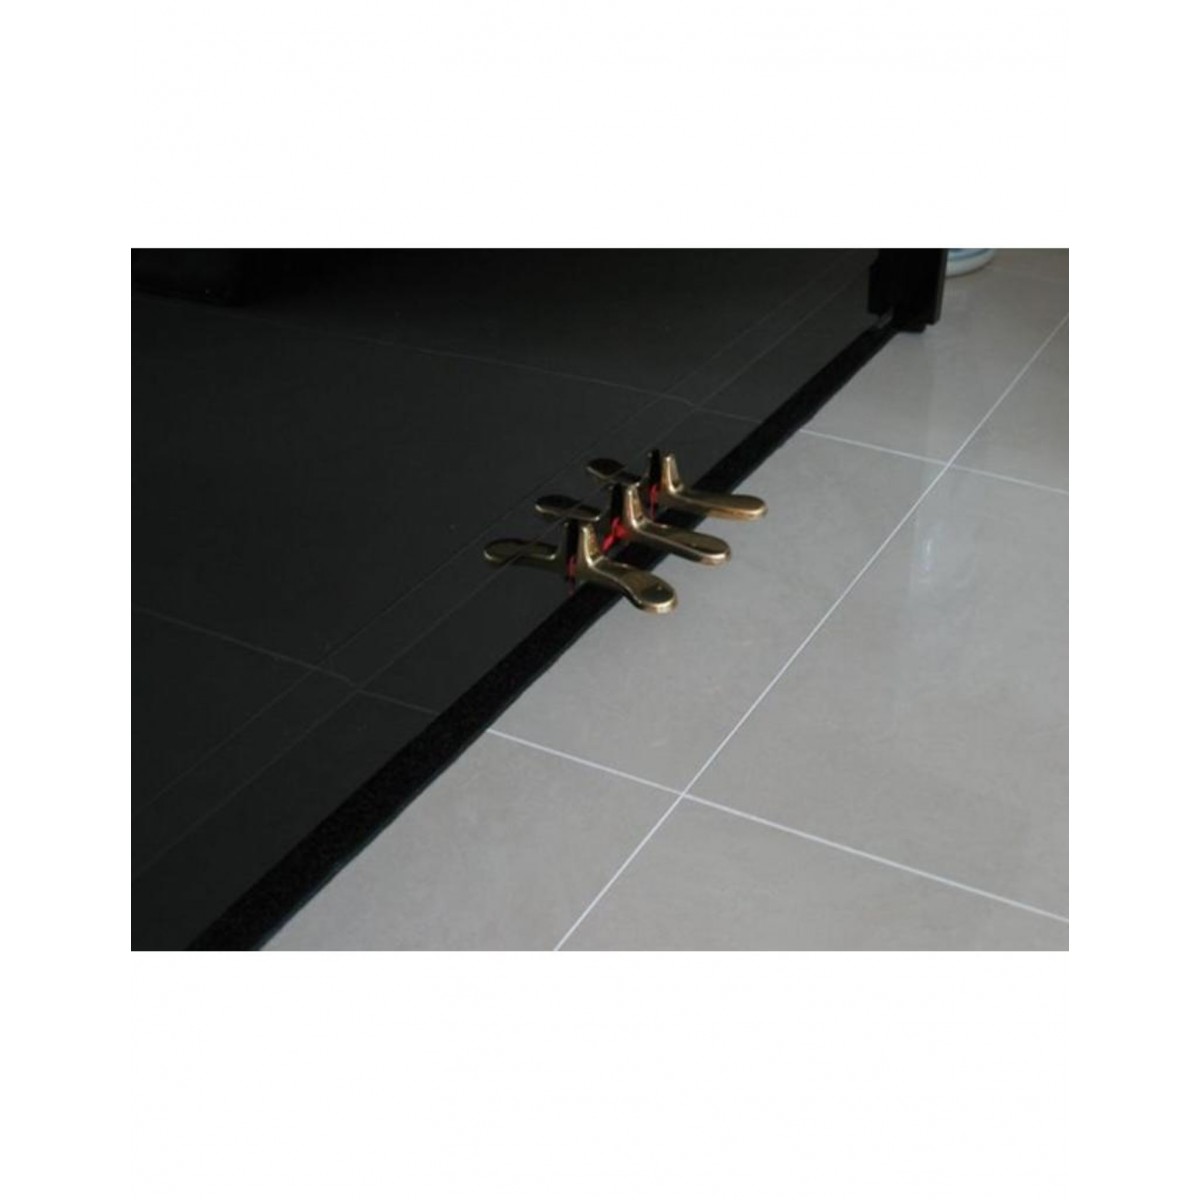 Klavier Fußbodenheizung Isolierung Teppich schmal 151 x 32 cm